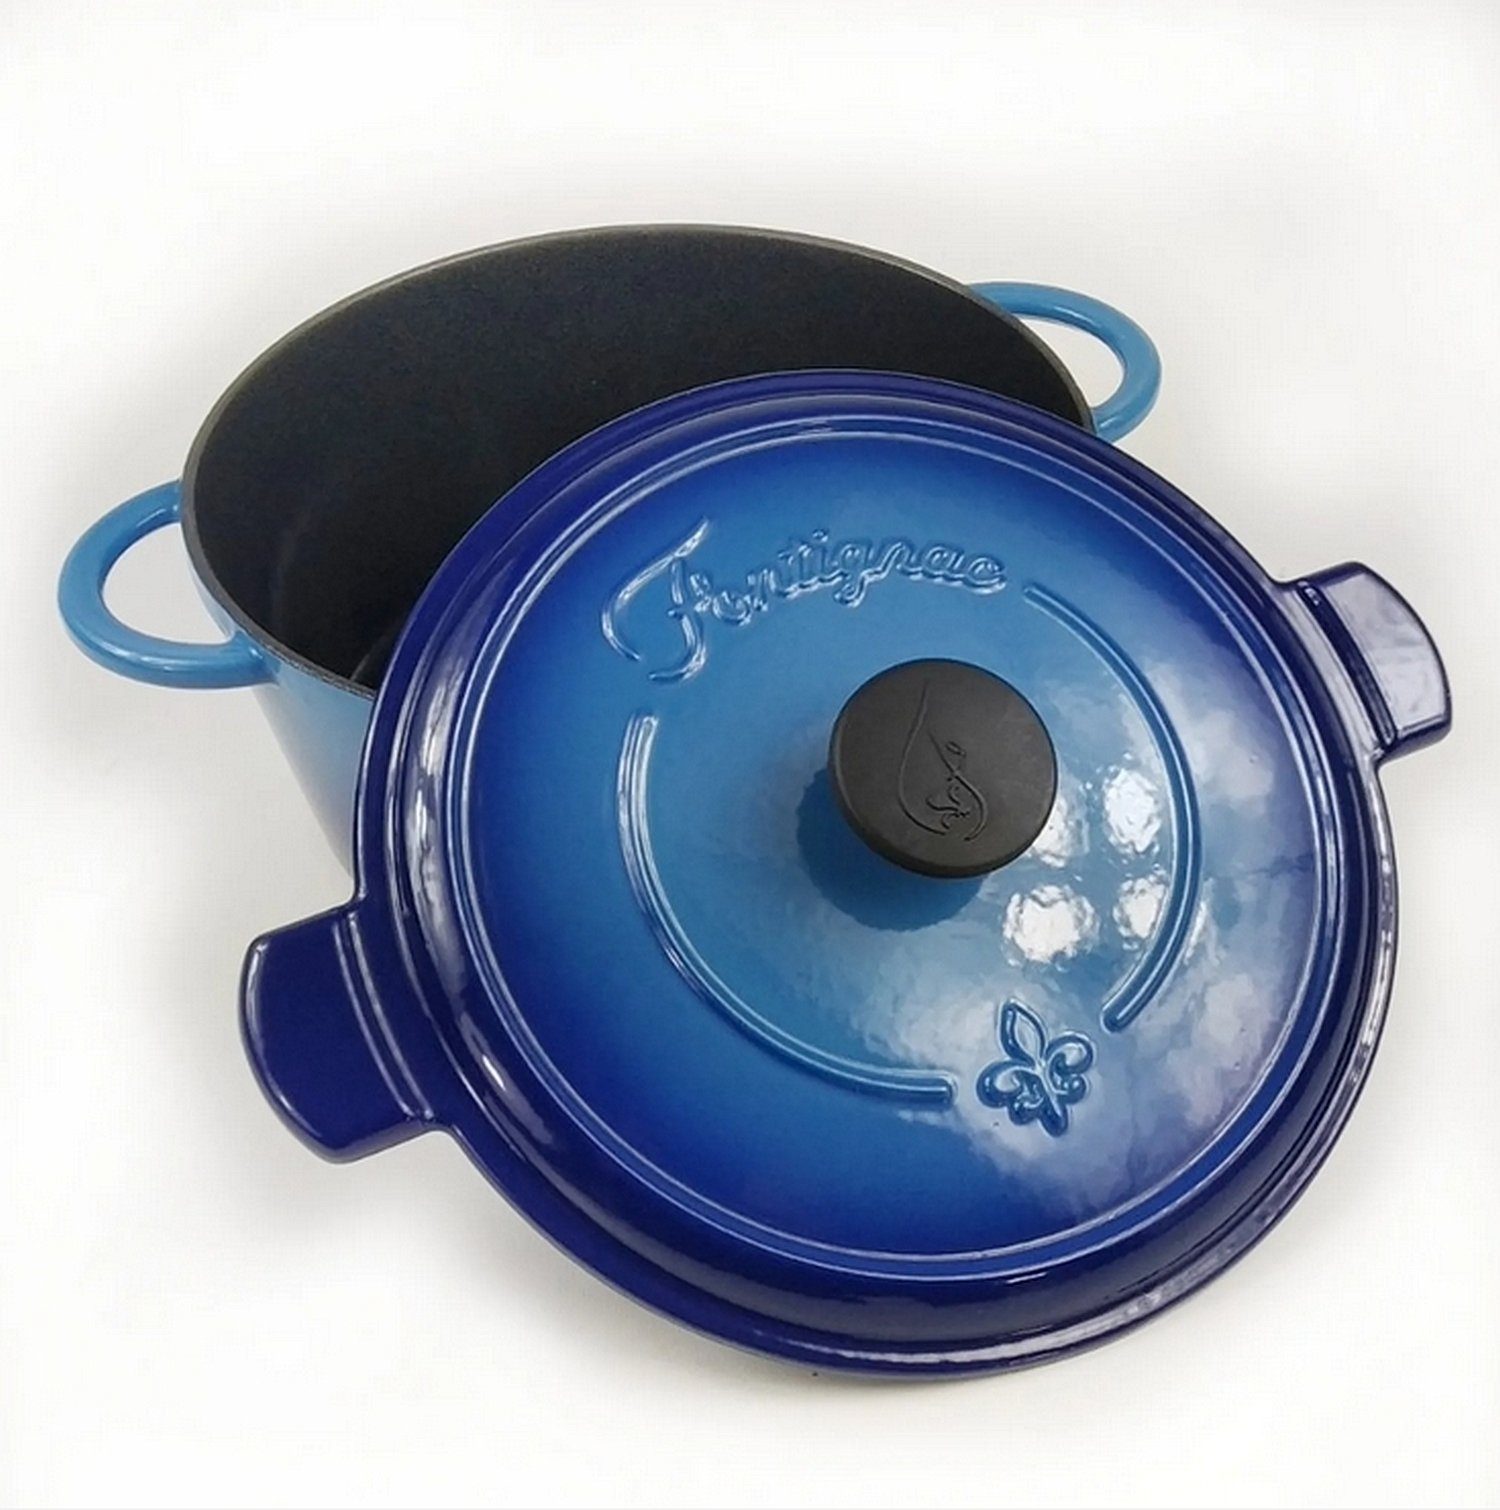 Fontignac Bräter Fontignac Bräter Gusseisen ⌀24 cm 3,6L blau mit Deckel  Induktion Ofen Gas, Gusseisen, induktionsgeeignet